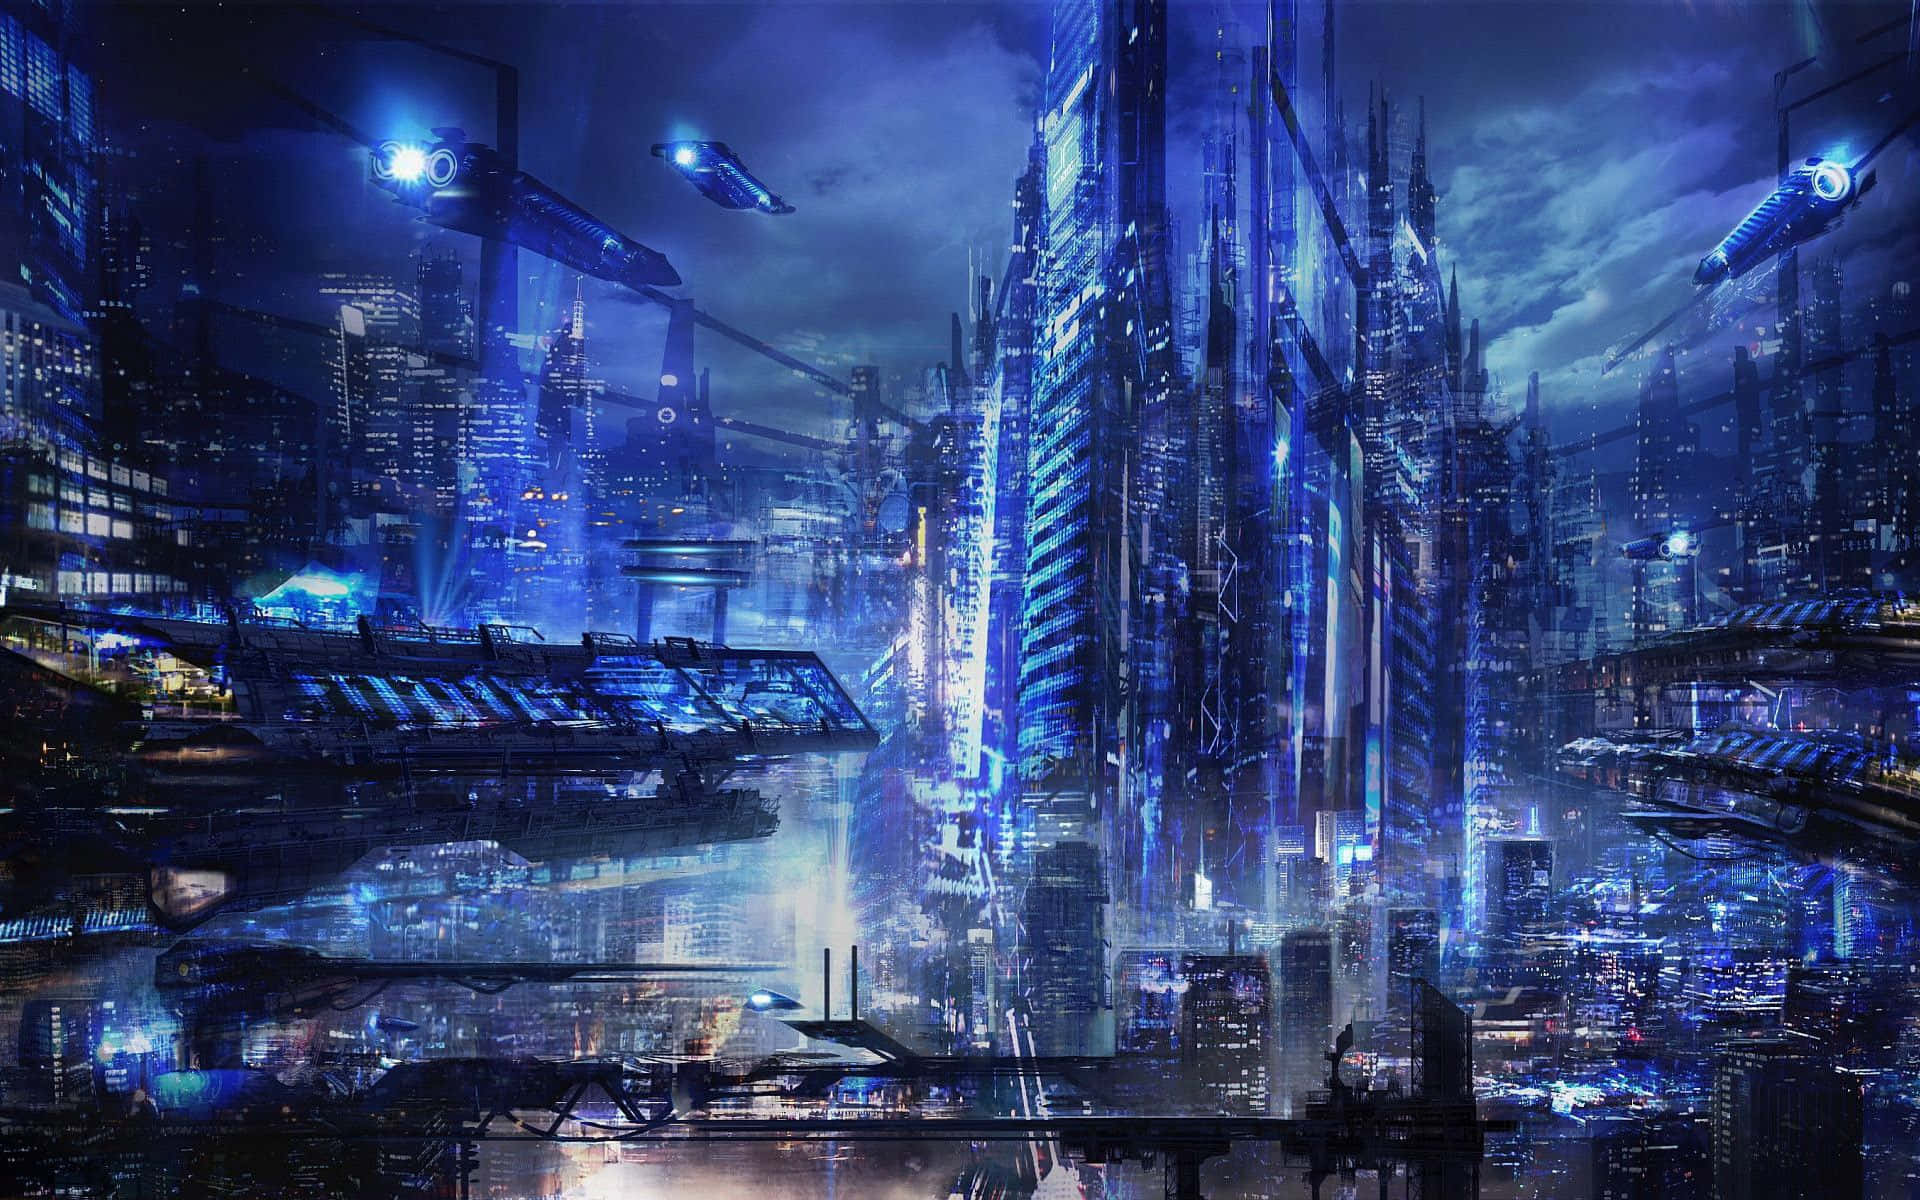 Explore Cyberpunk City